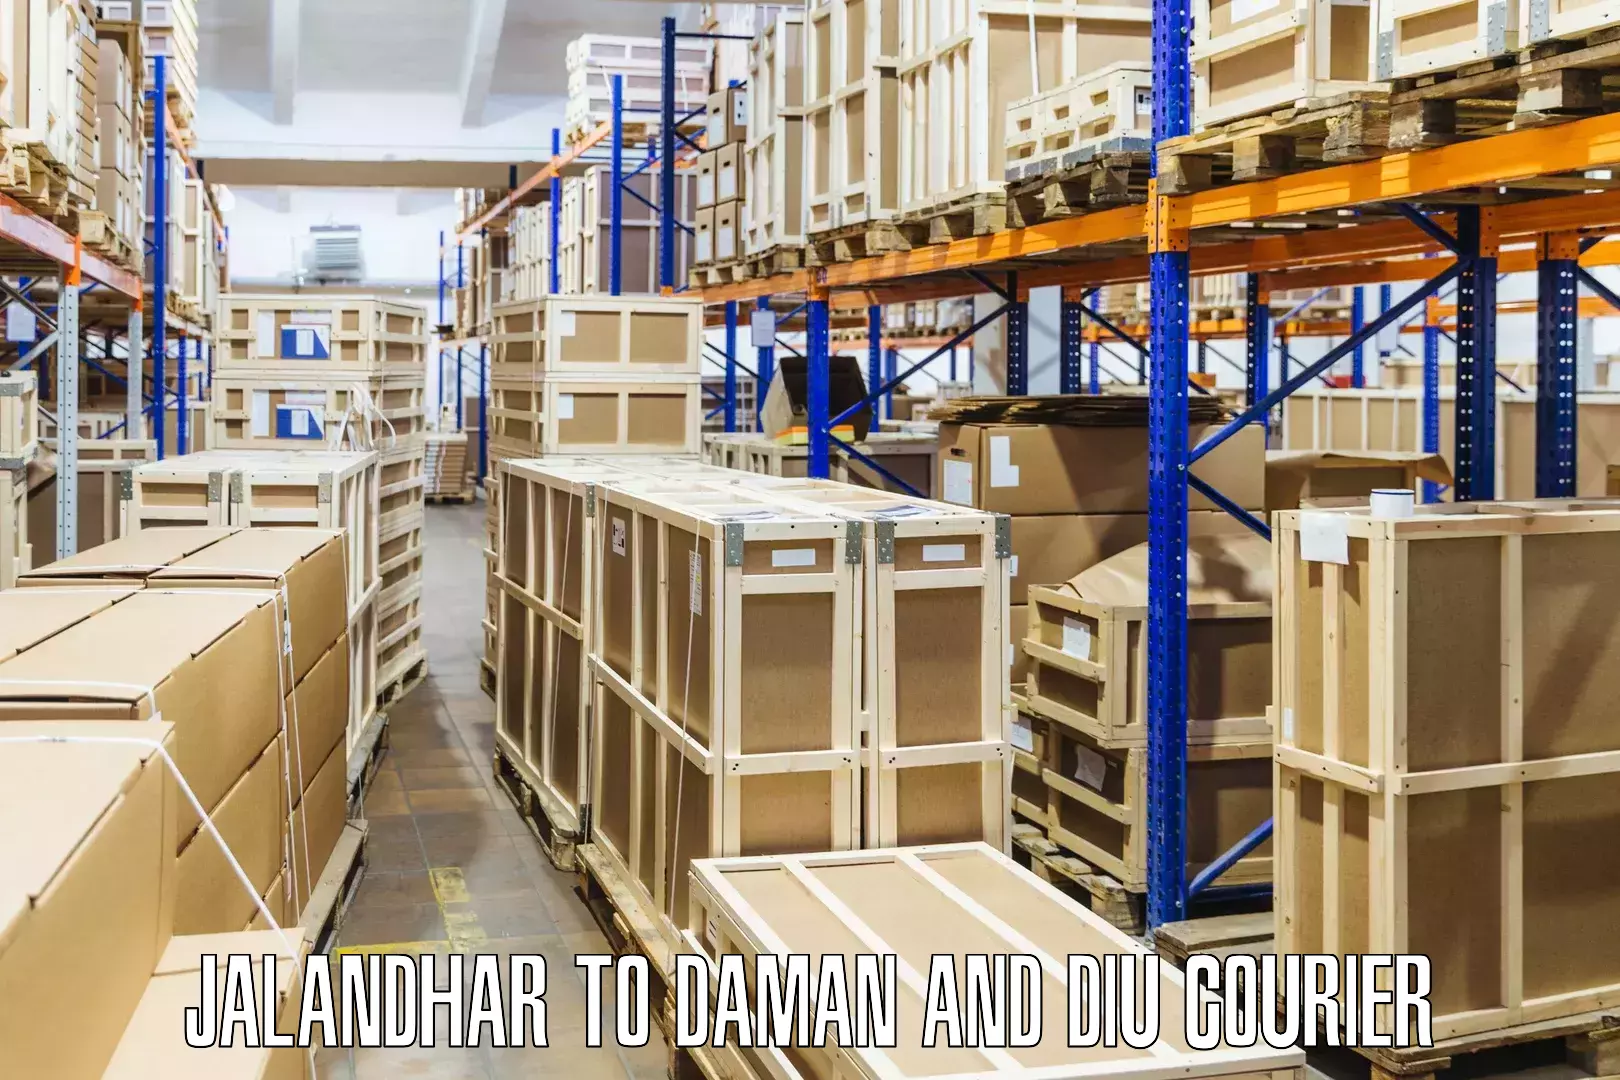 Courier service comparison Jalandhar to Daman